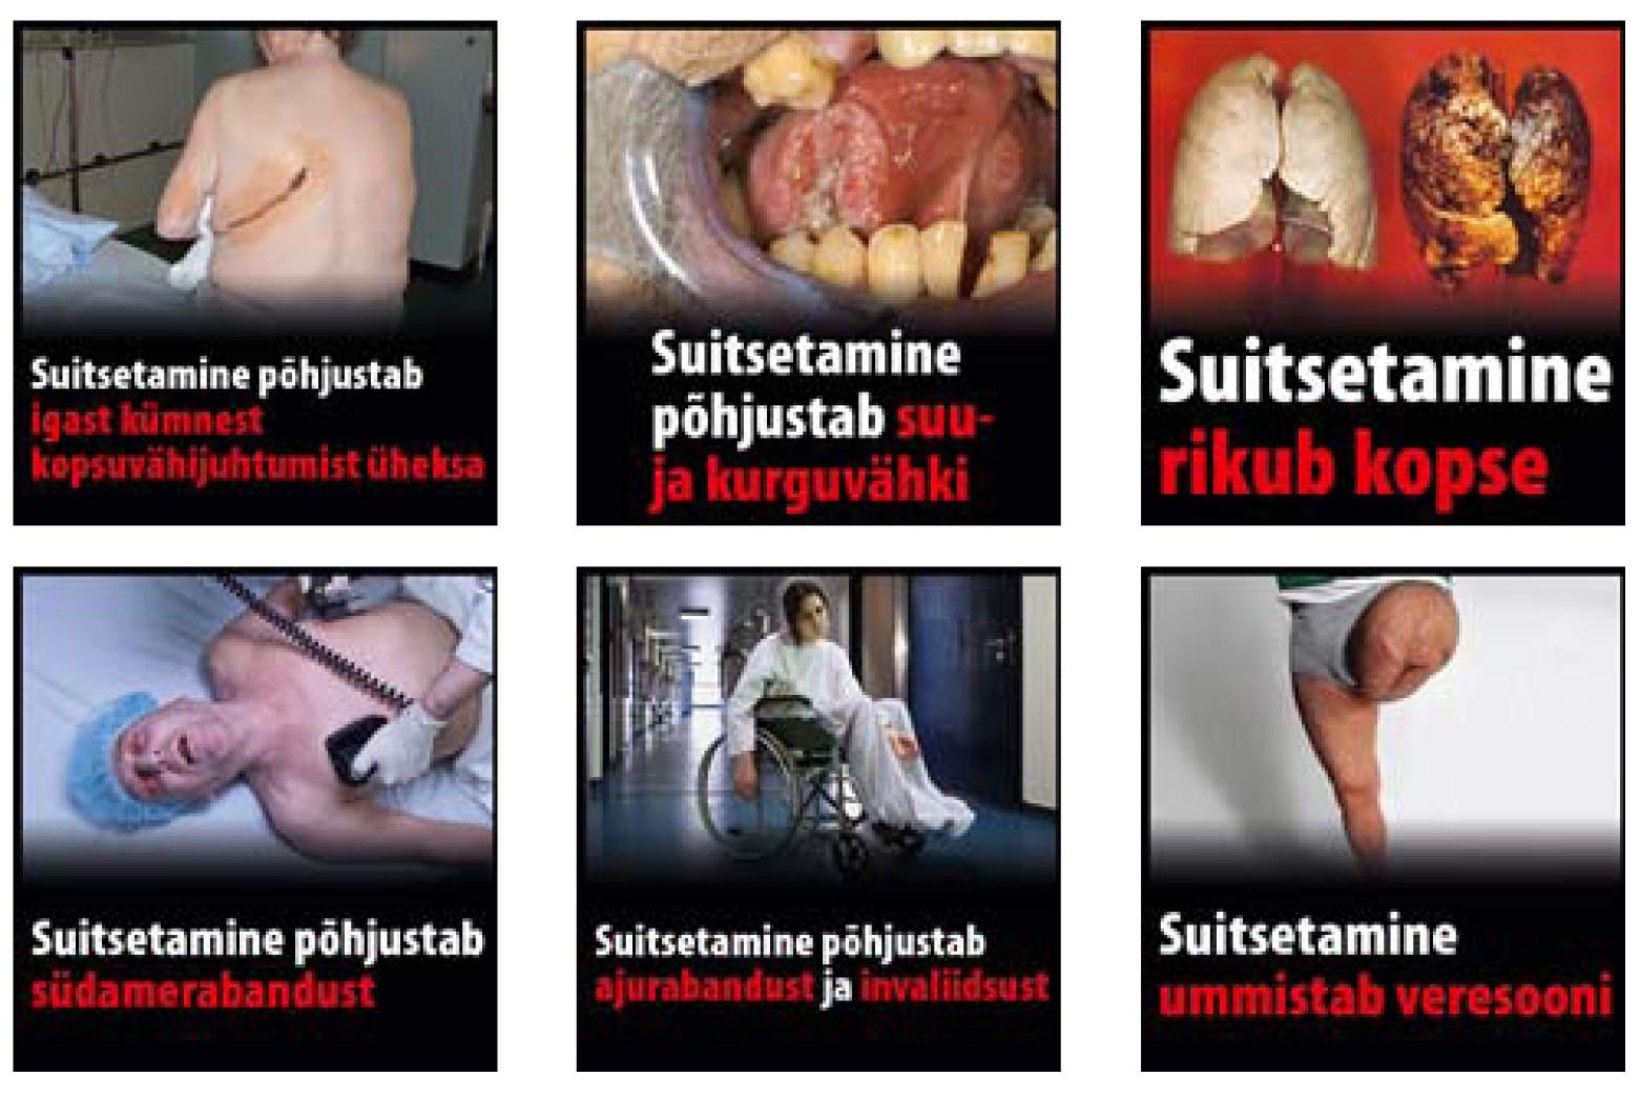 Sigaretipakkidele tulevad räiged eestikeelsed hoiatussildid